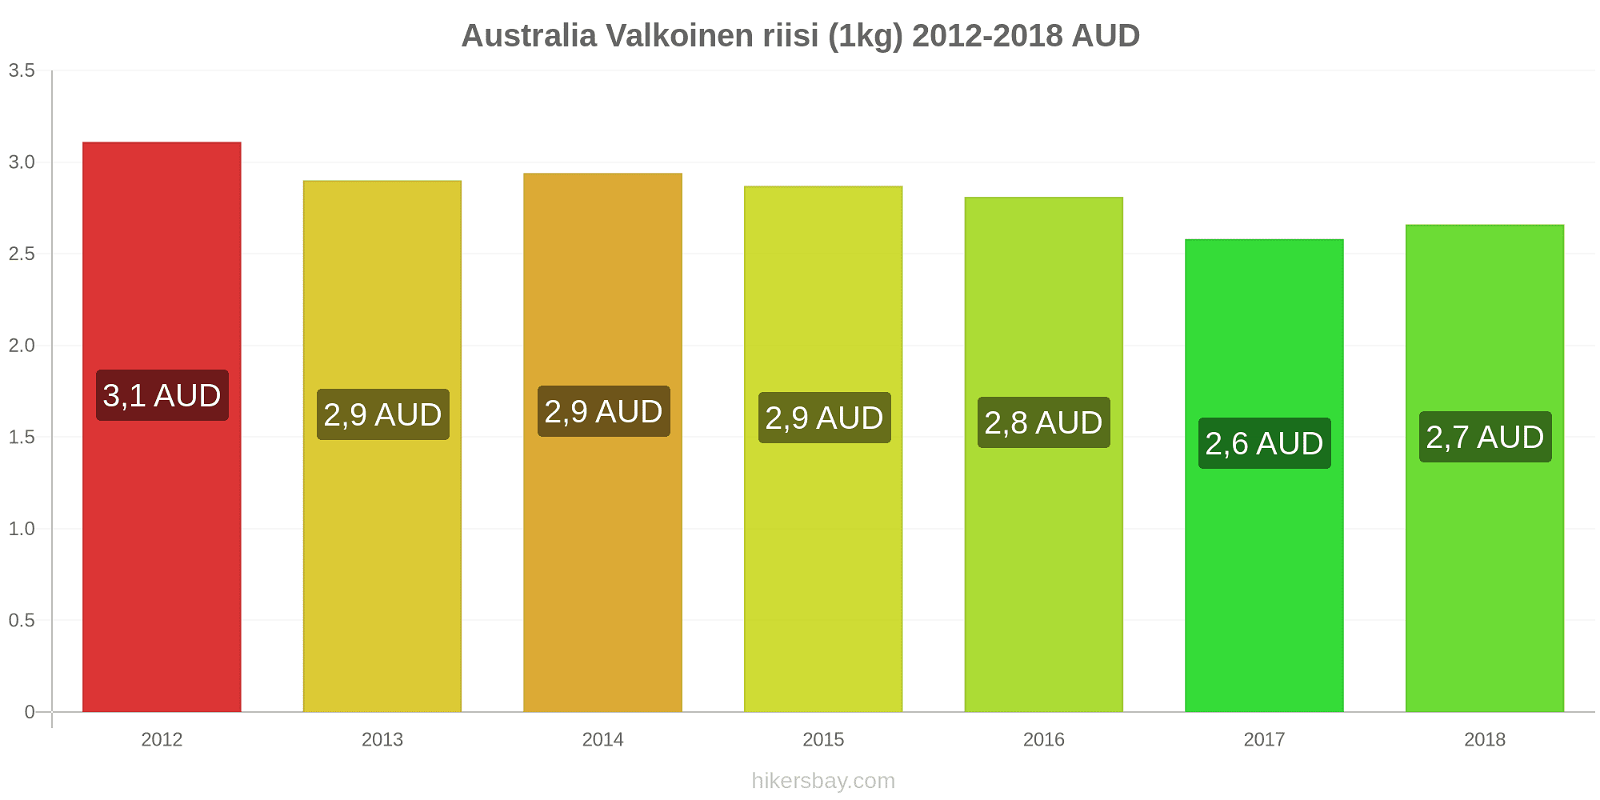 Australia hintojen muutokset Valkoinen riisi (1kg) hikersbay.com